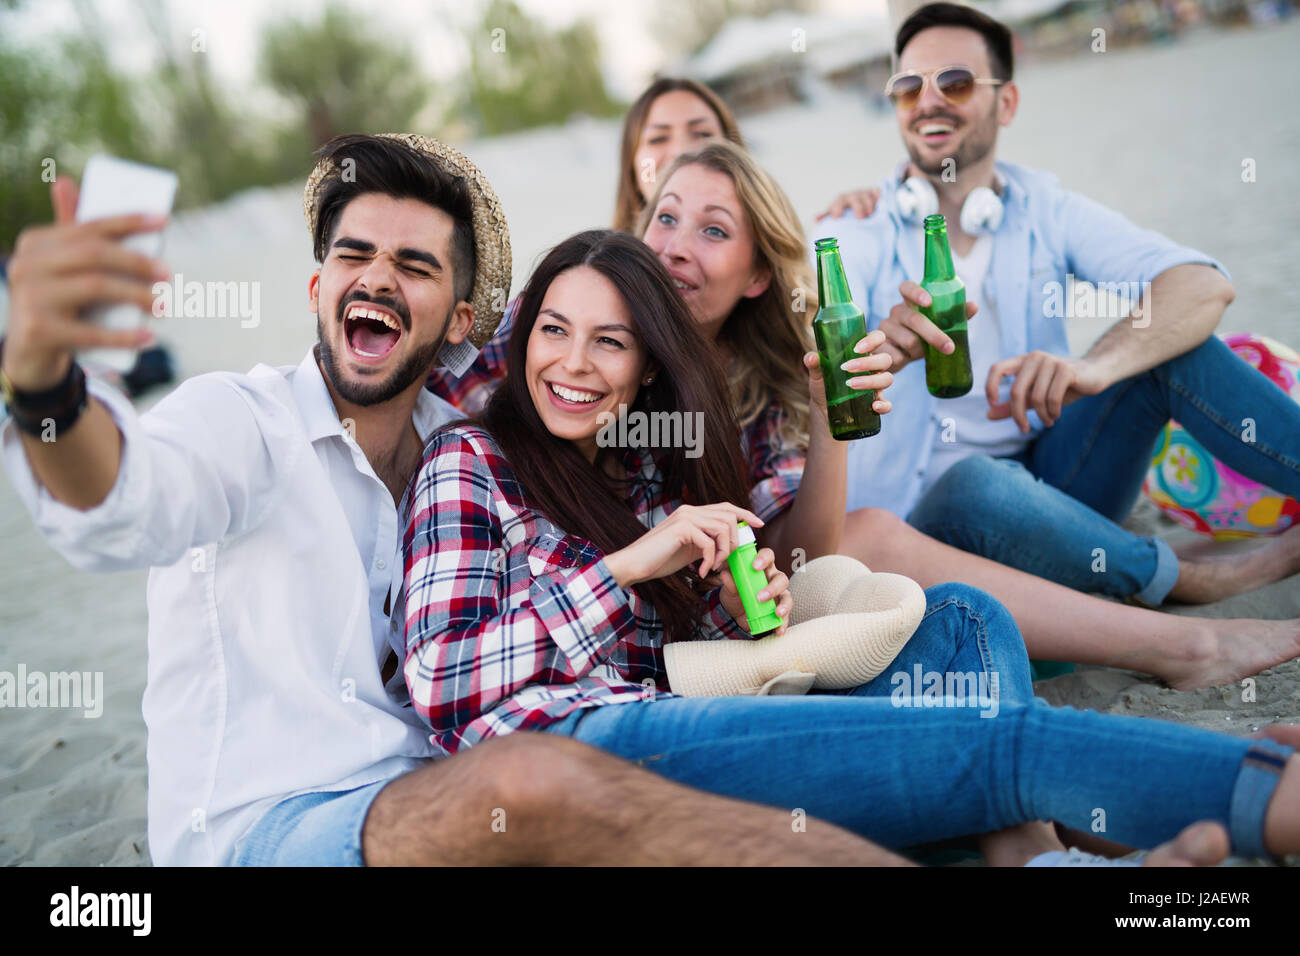 Glückliche Freunde feiern und Spaß am Strand im Sommer Stockfoto